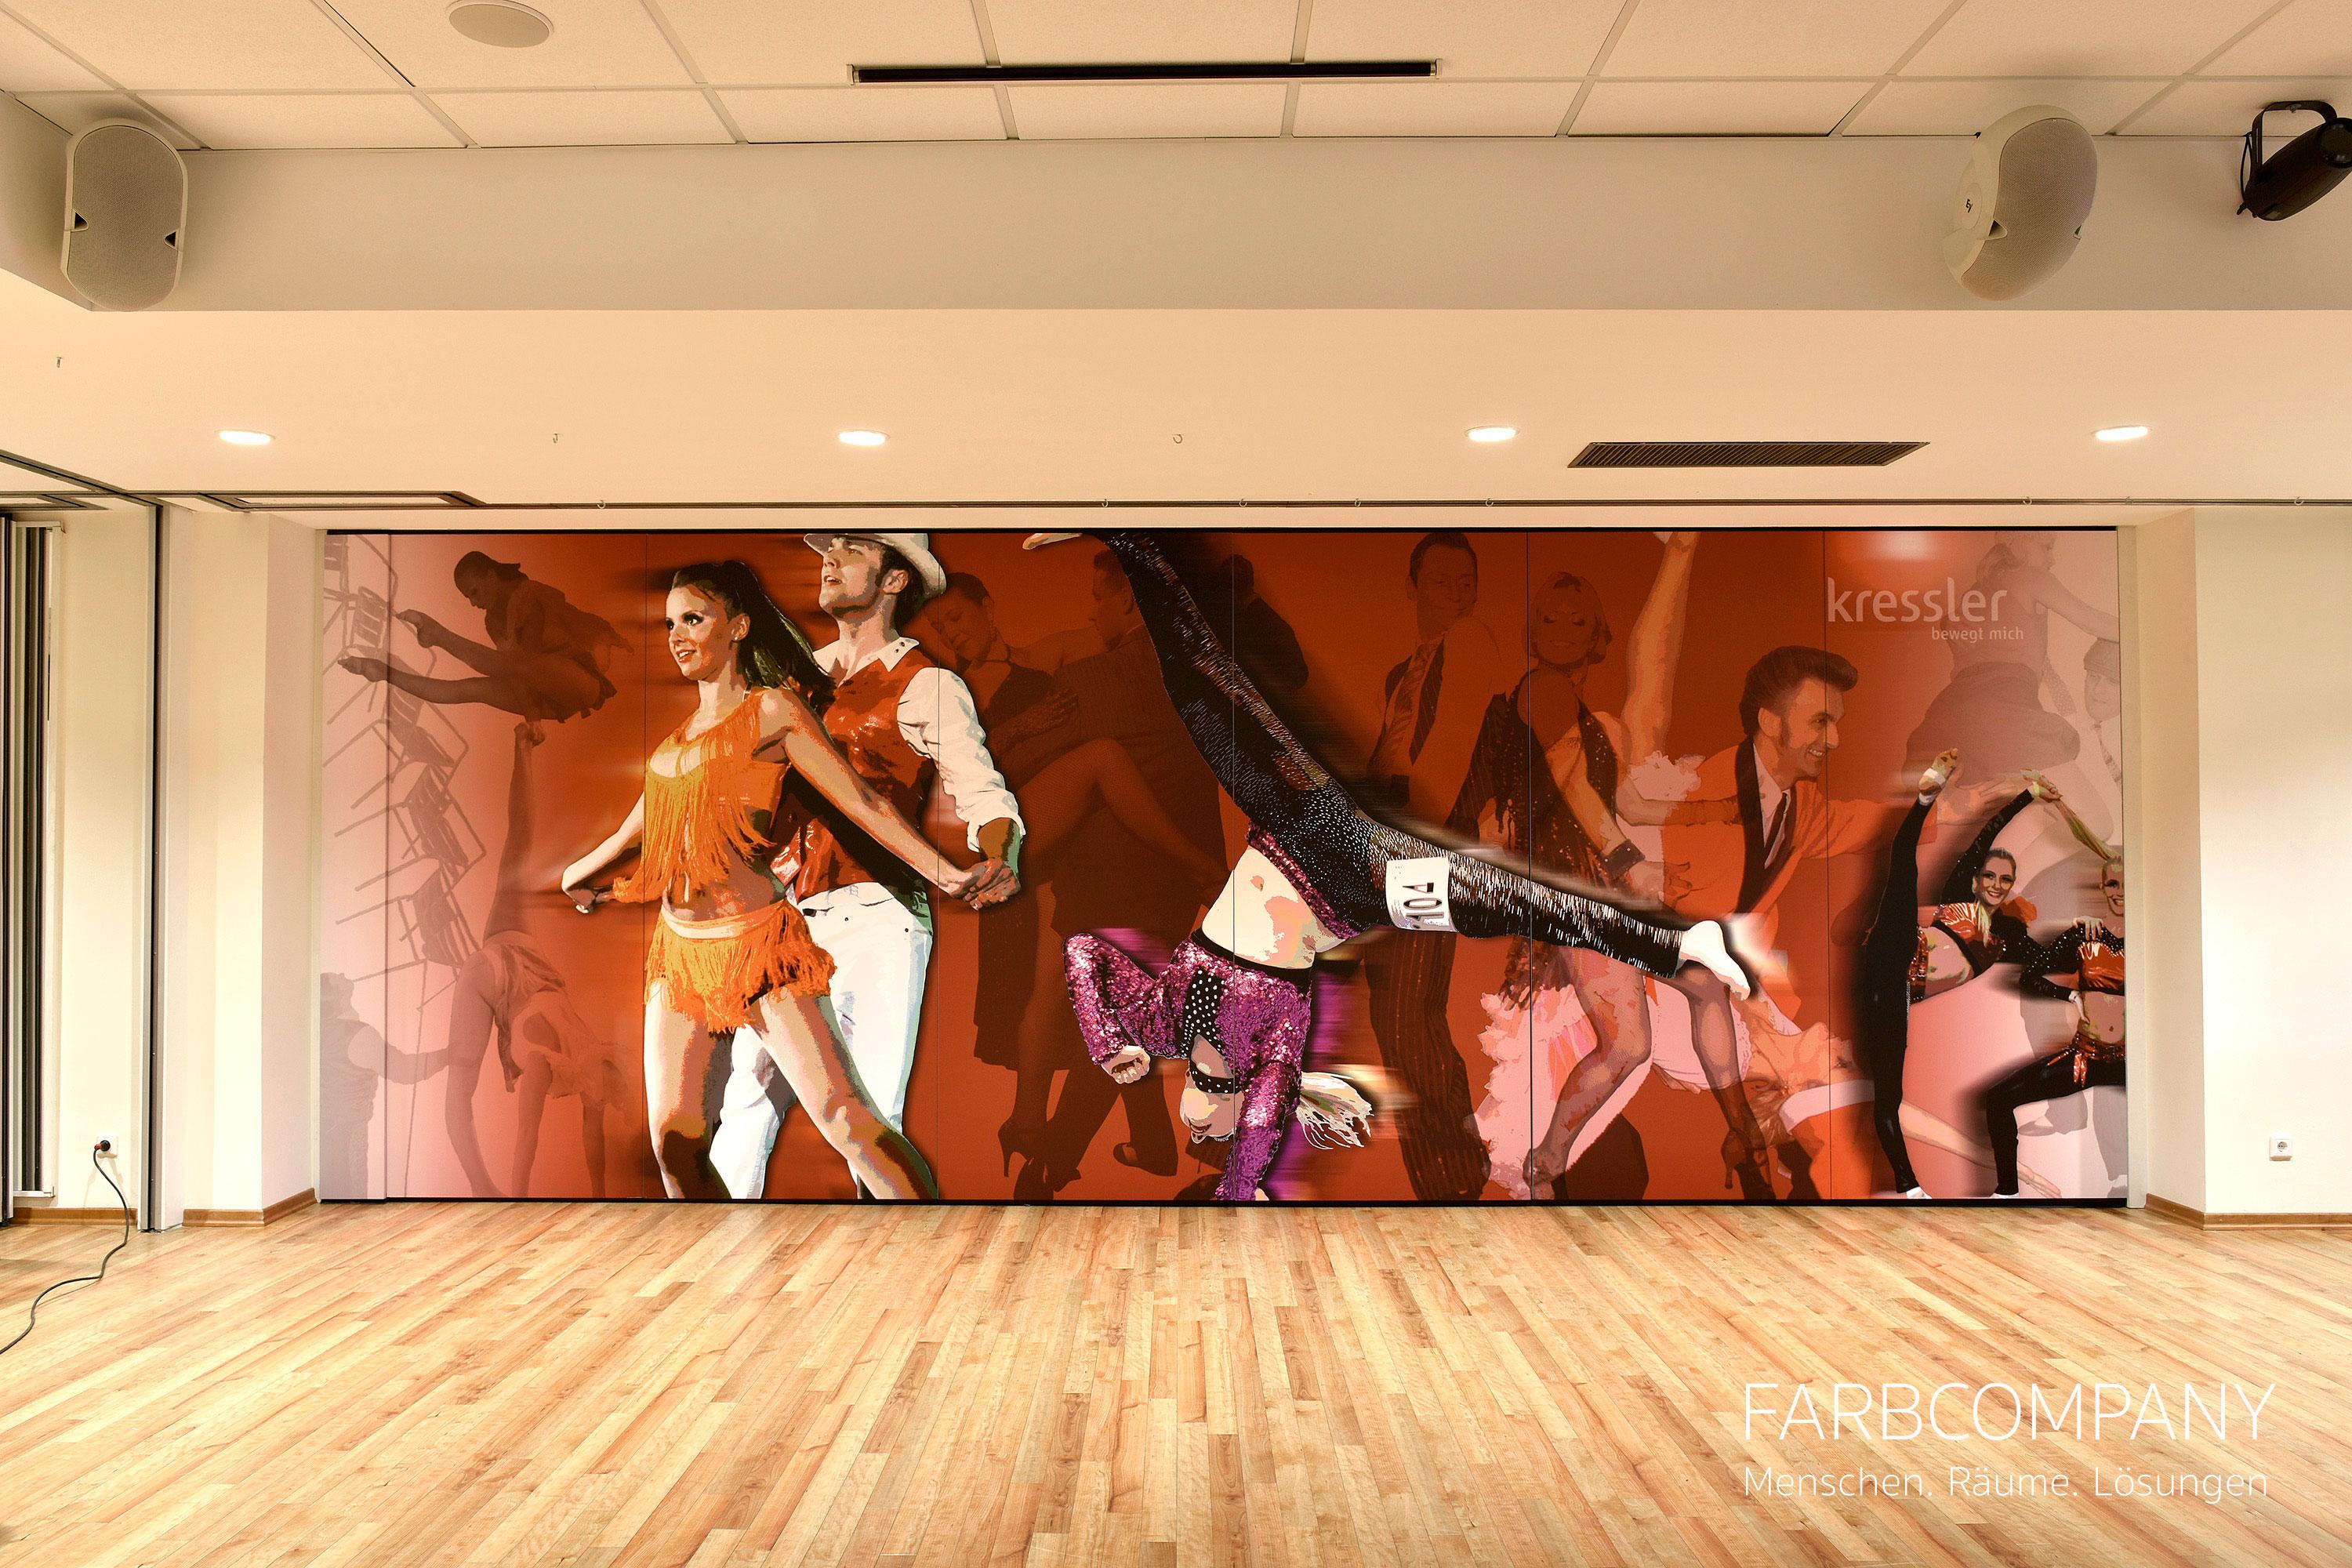 Wandgestaltung/ Design einer mobilen Wand mit einem Tanzmotiv. #raumgestaltung #designwand ©Mike Schleupner